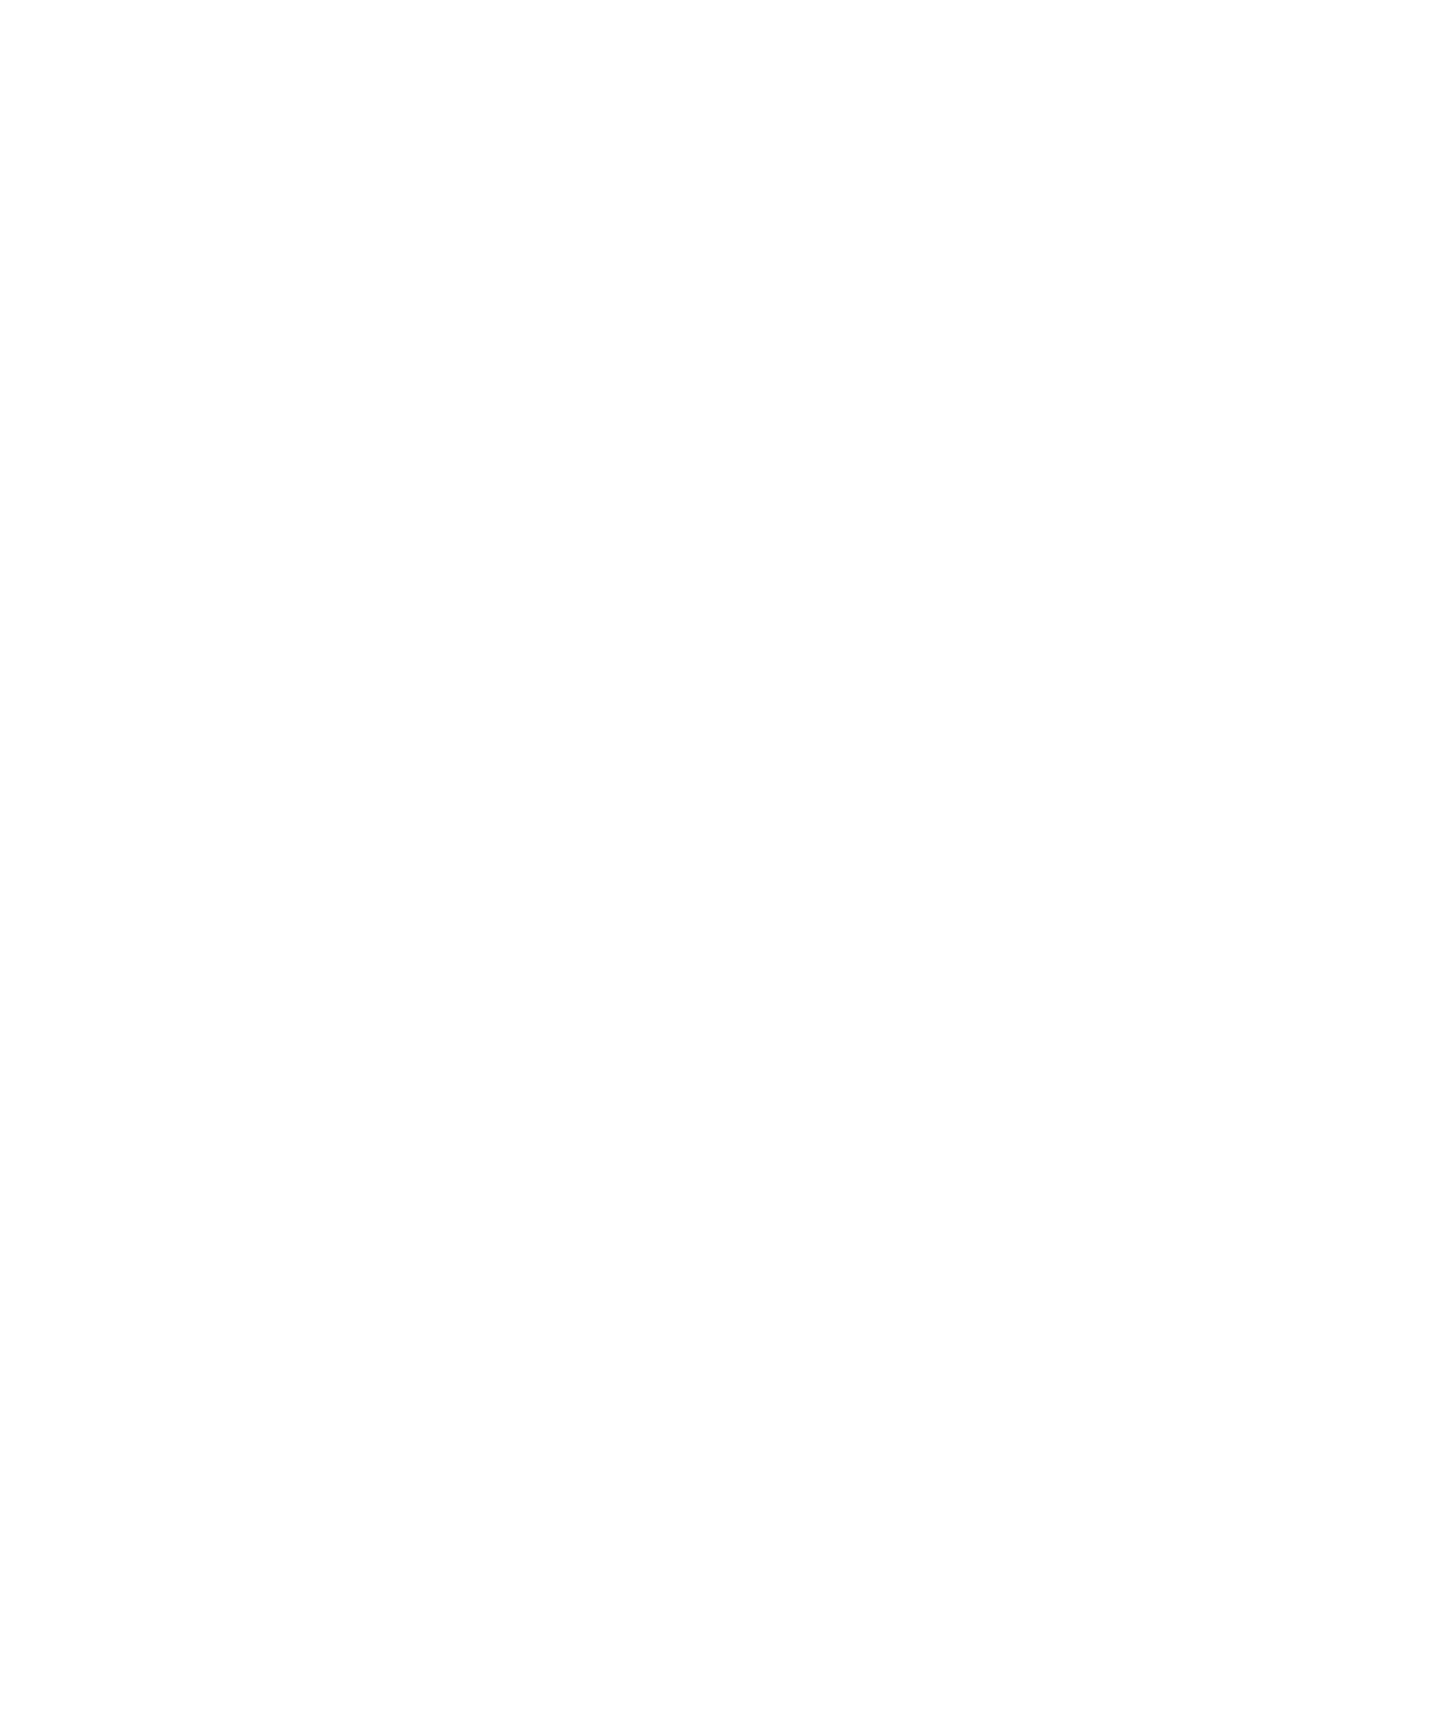 Digital Bros logo for dark backgrounds (transparent PNG)